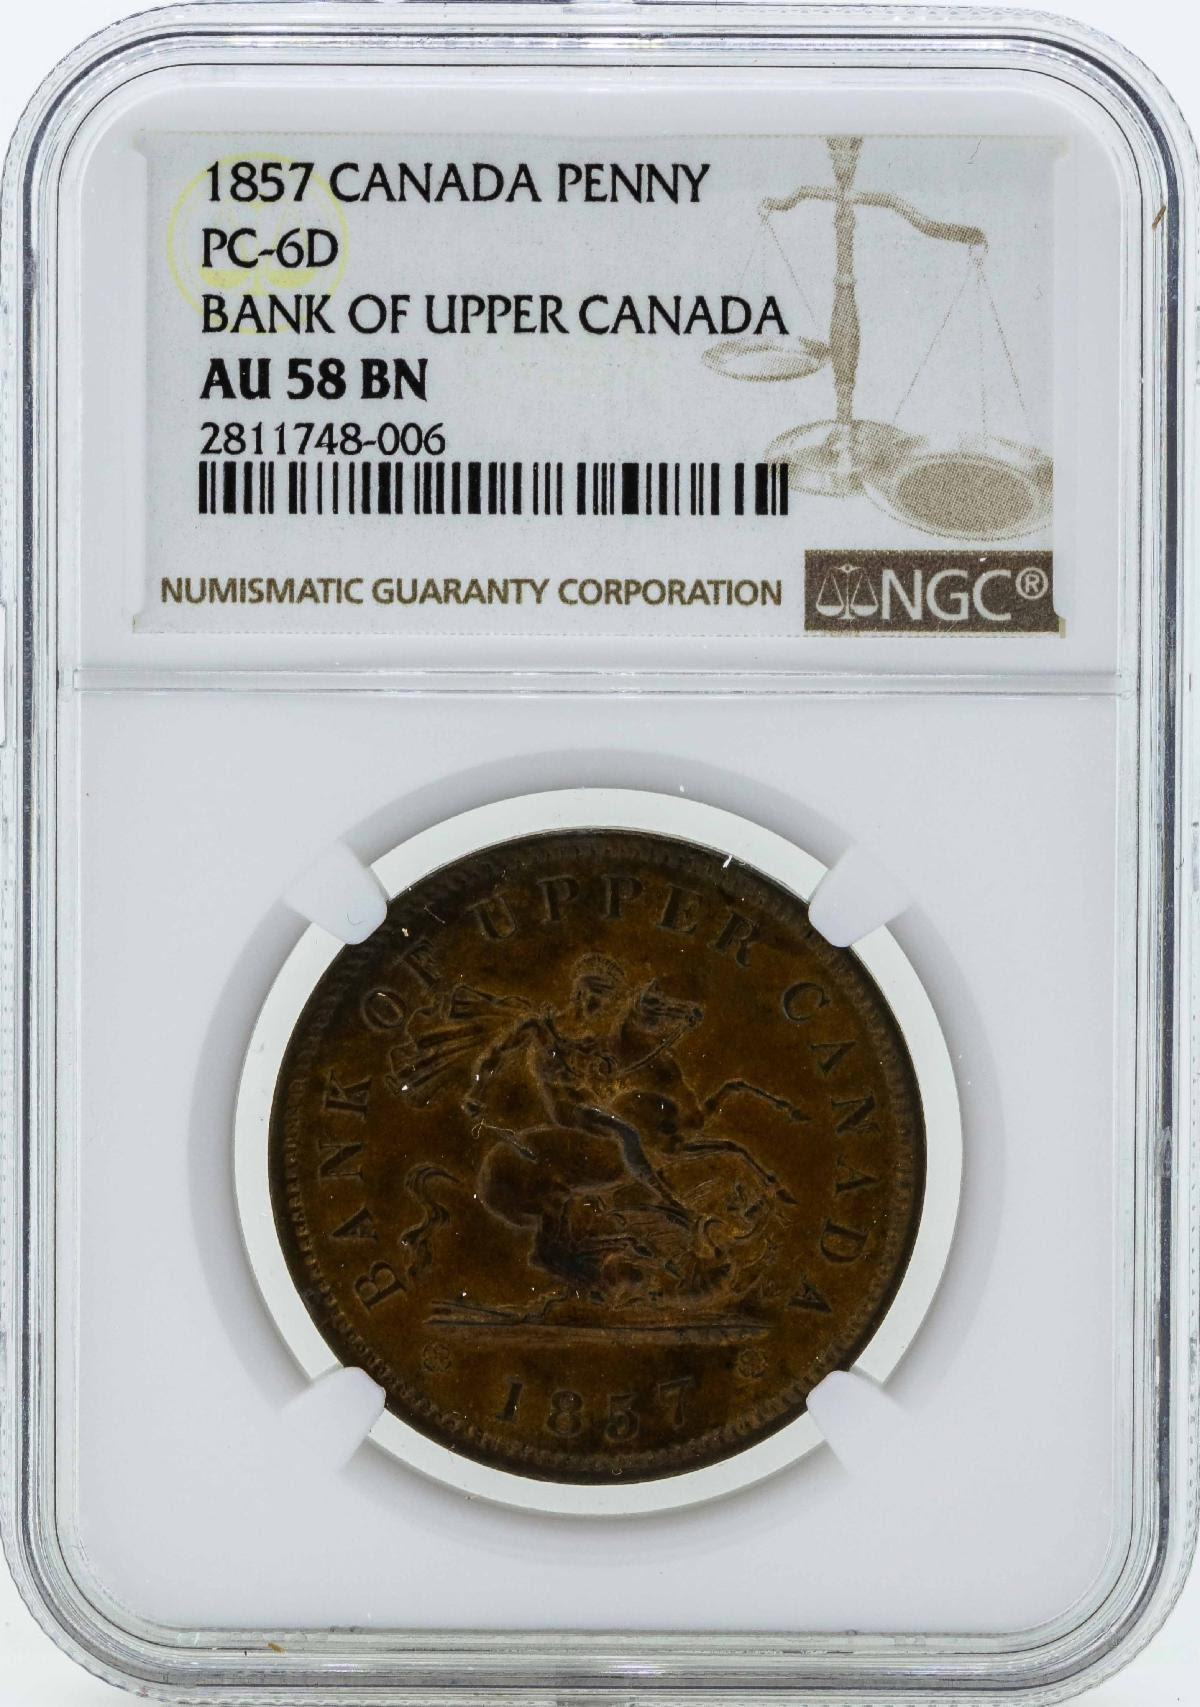 Canada 1857 Penny. Courtesy NCIC (Numismatic Crime Information Center), Doug Davis